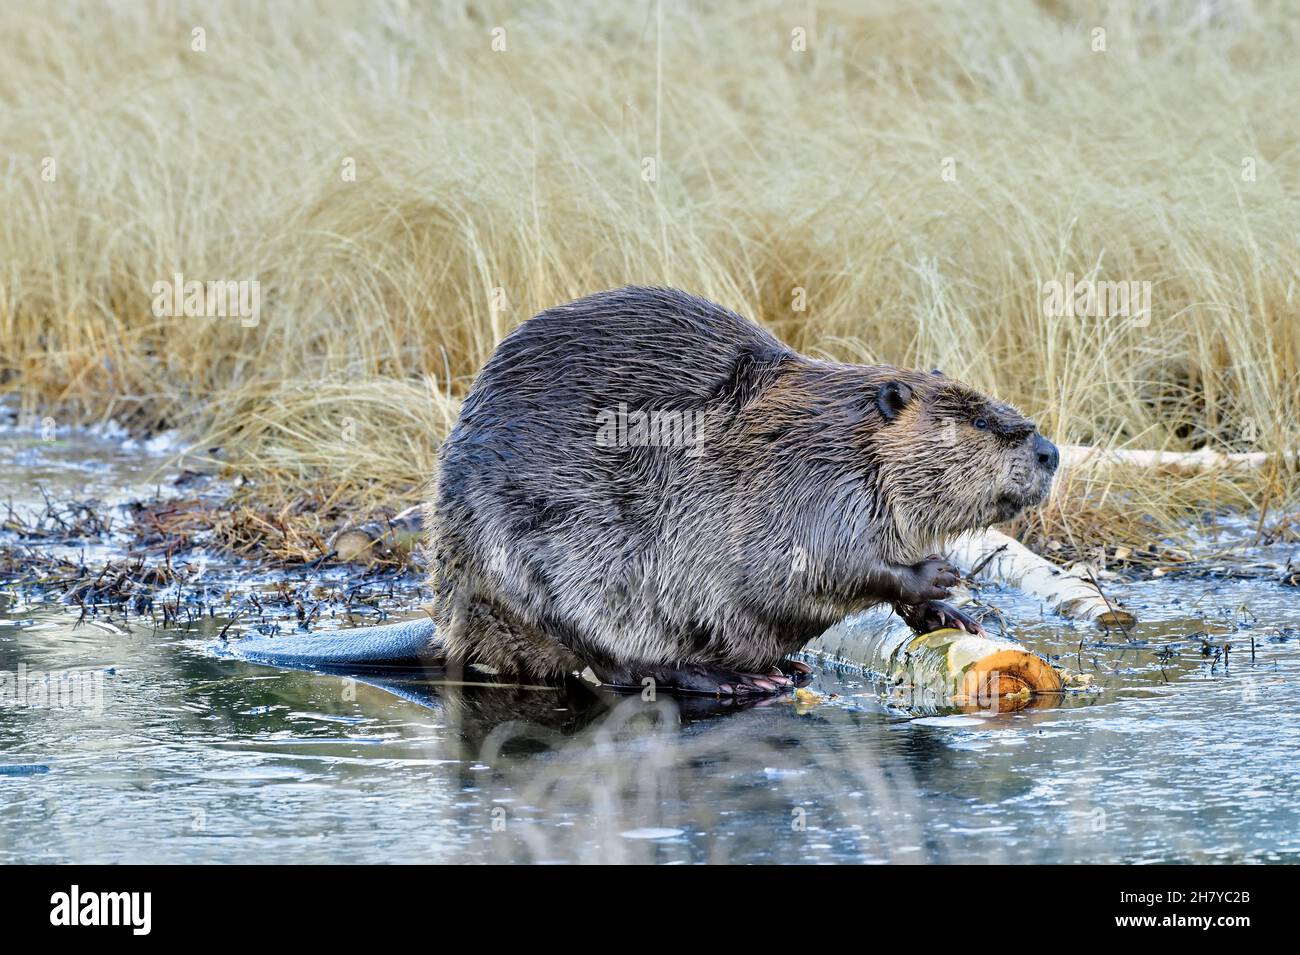 Un castor sauvage mâle, 'Castor canadensis', se nourrissant d'une écorce de peuplier qui est gelée dans la glace de son étang de castor Banque D'Images